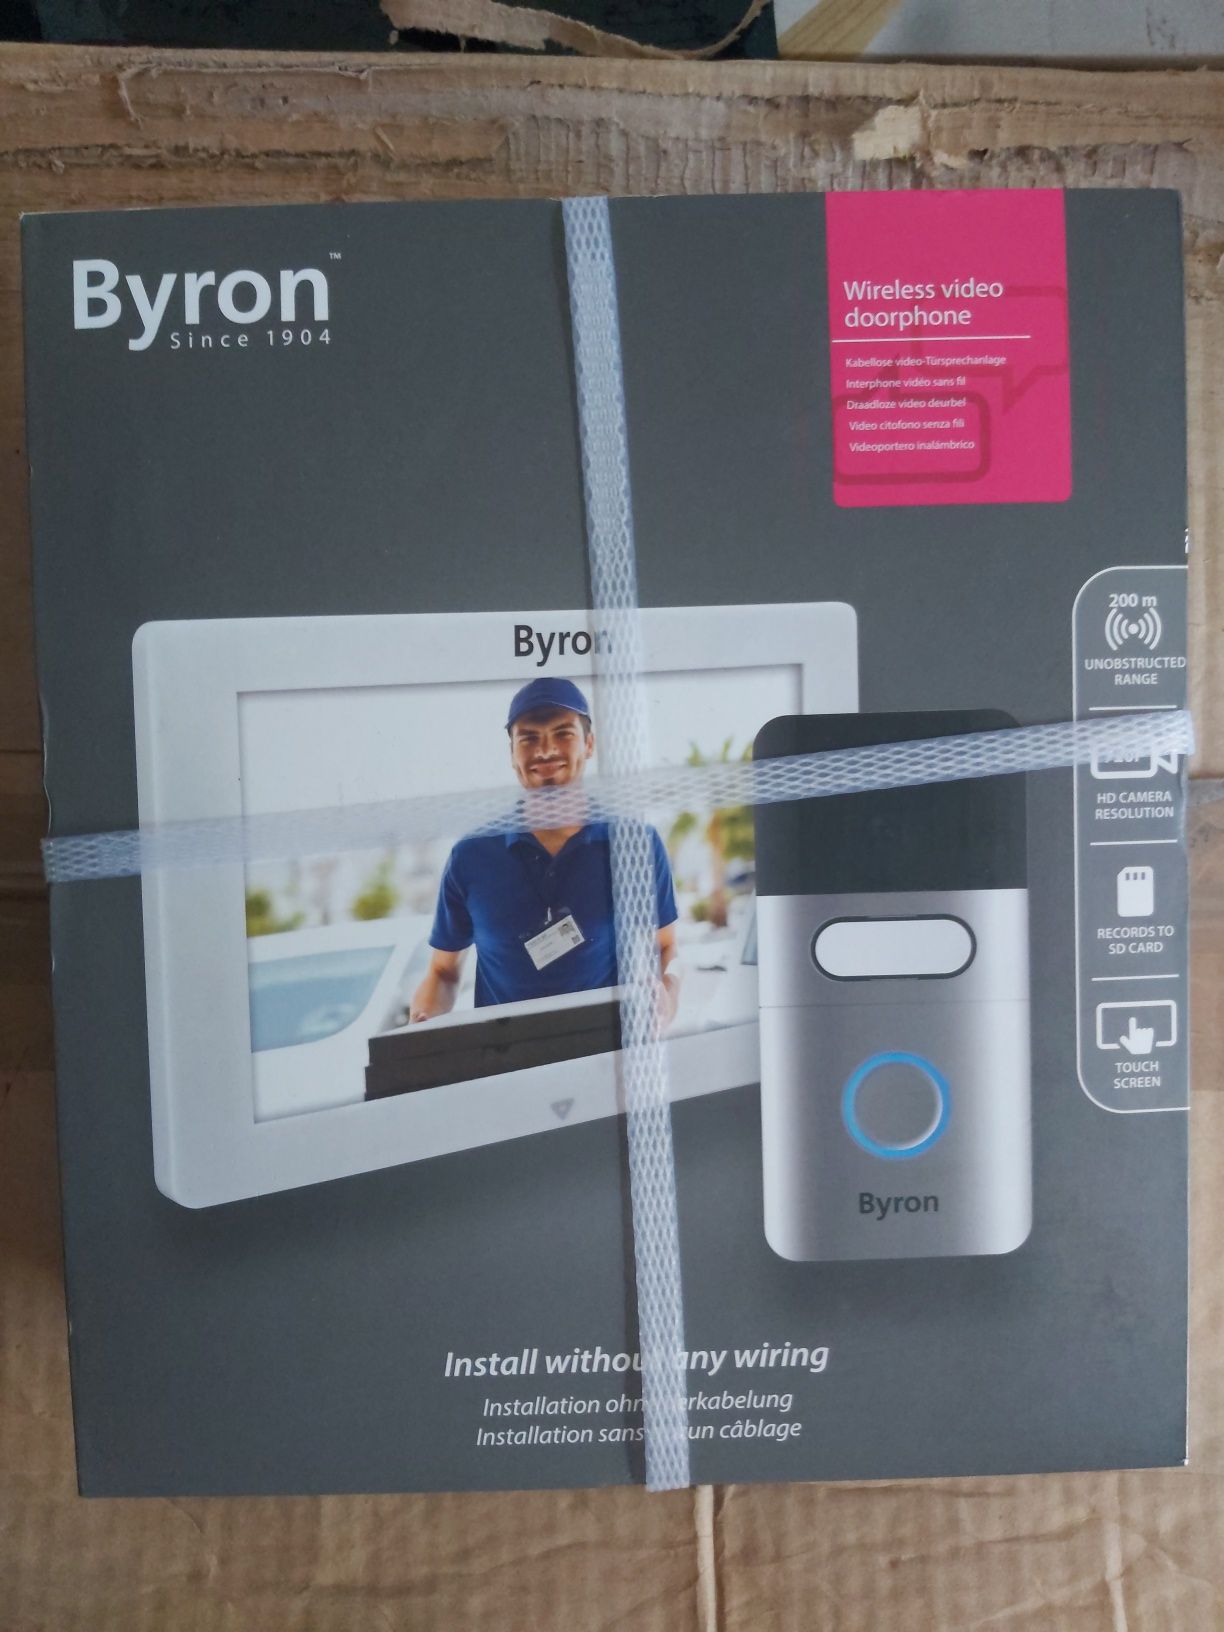 Bezprzewodowy wideodomofon Byron DIC 22615